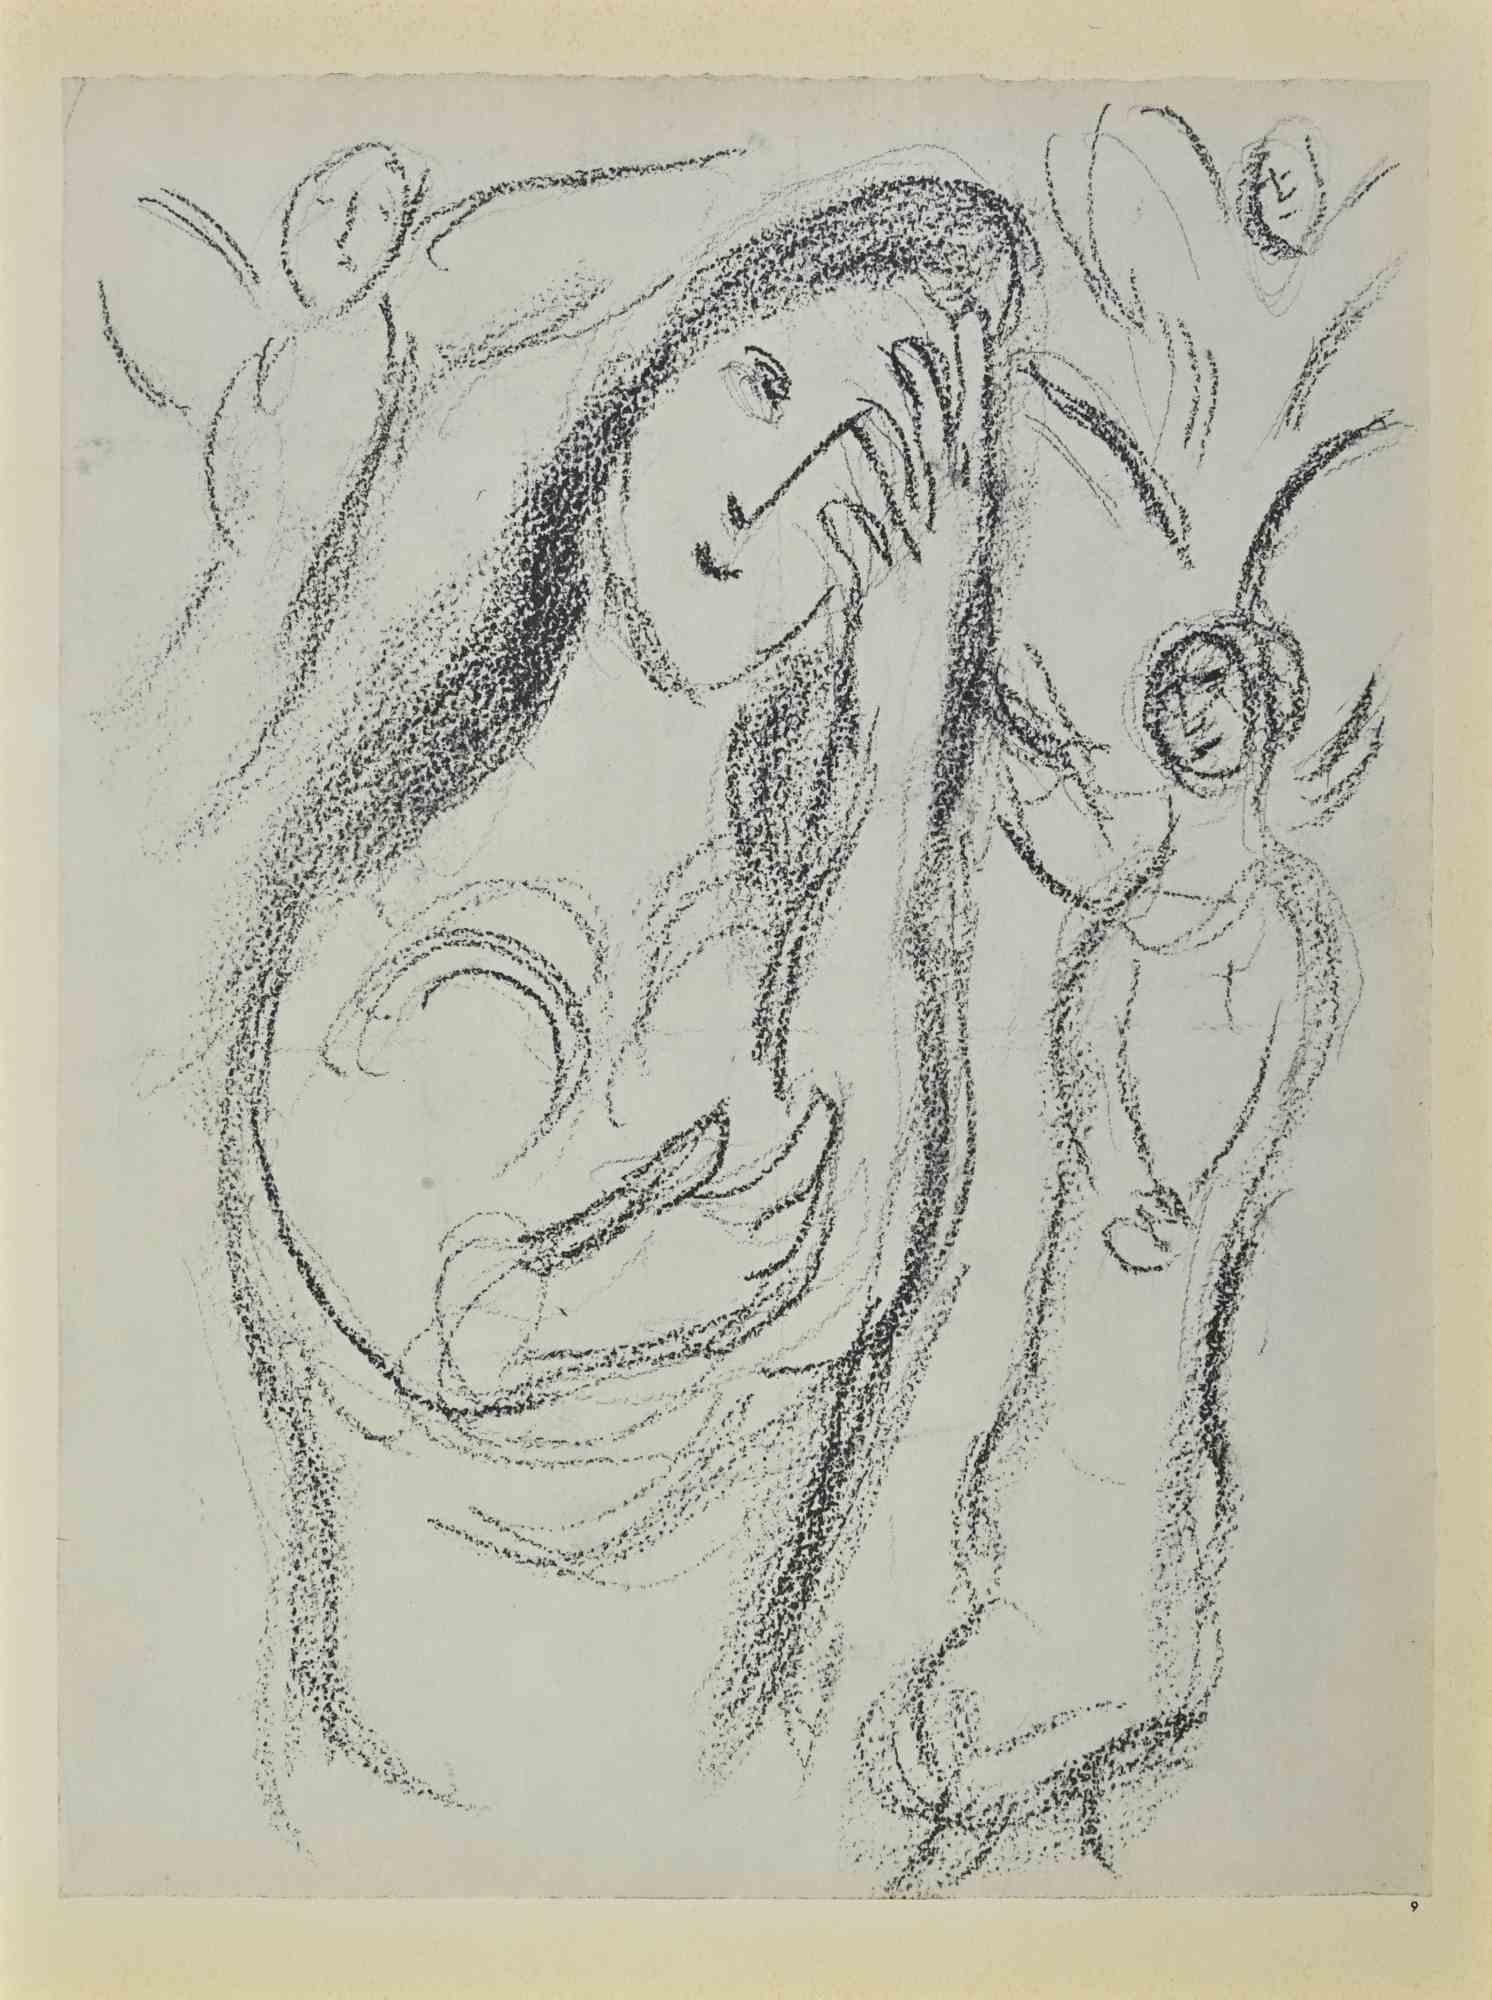 Sarah And The Angels ist ein Kunstwerk von March Chagall aus den 1960er Jahren.

Lithographie auf braun getöntem Papier, ohne Signatur.

Lithographie auf beiden Blättern.

Auflage von 6500 unsignierten Lithografien. Gedruckt von Mourlot und